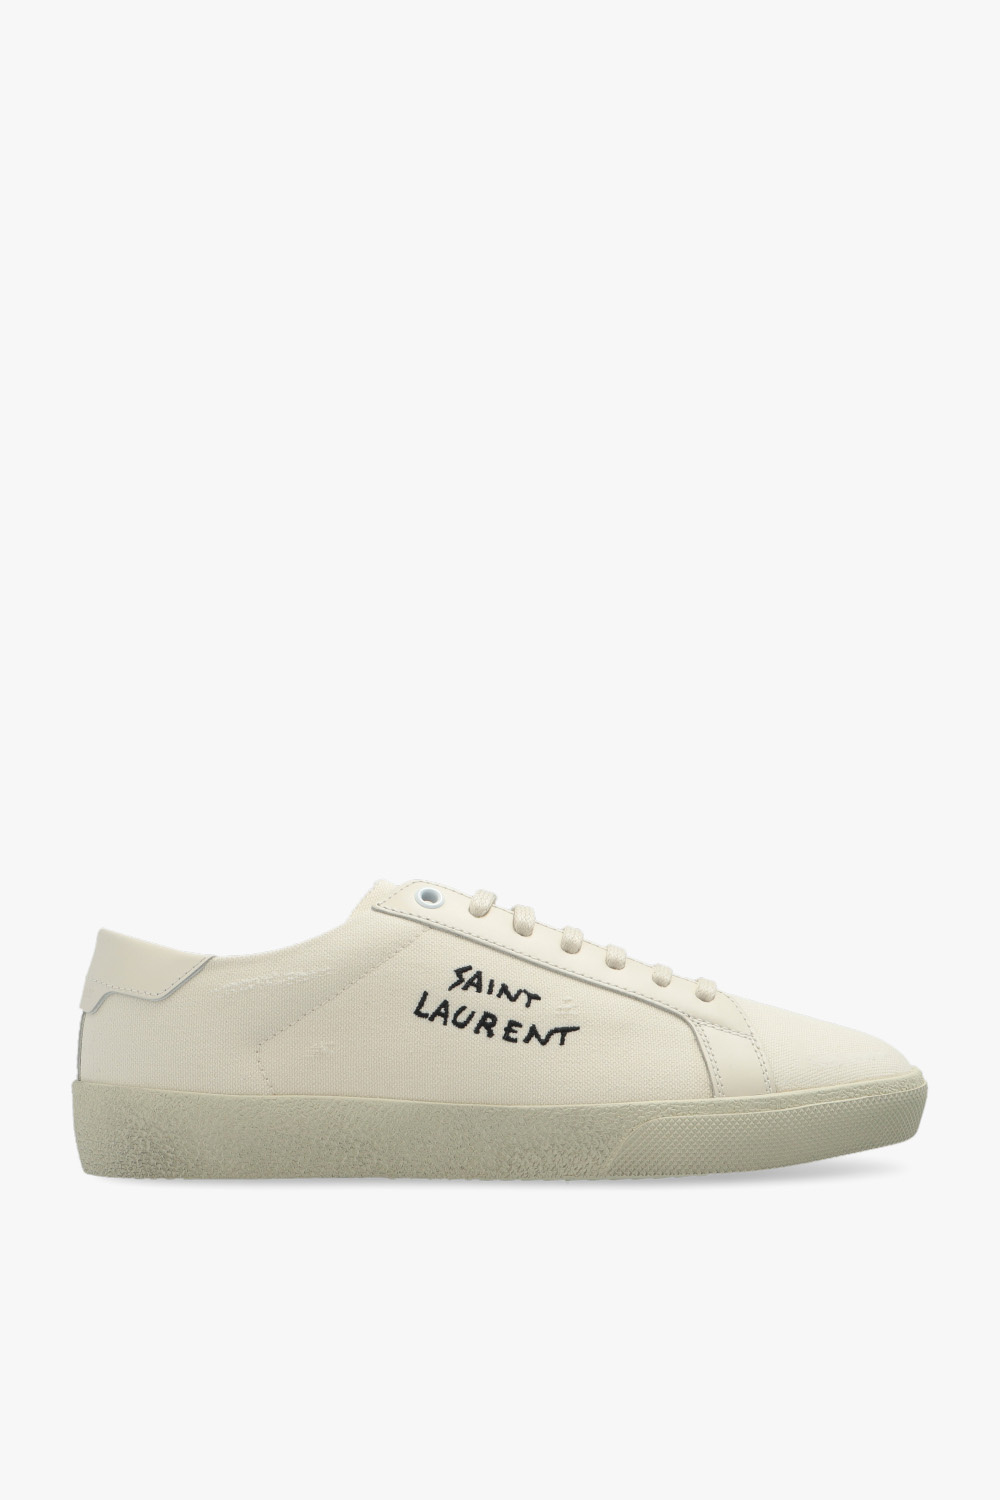 Saint Laurent ‘SL/06’ sneakers